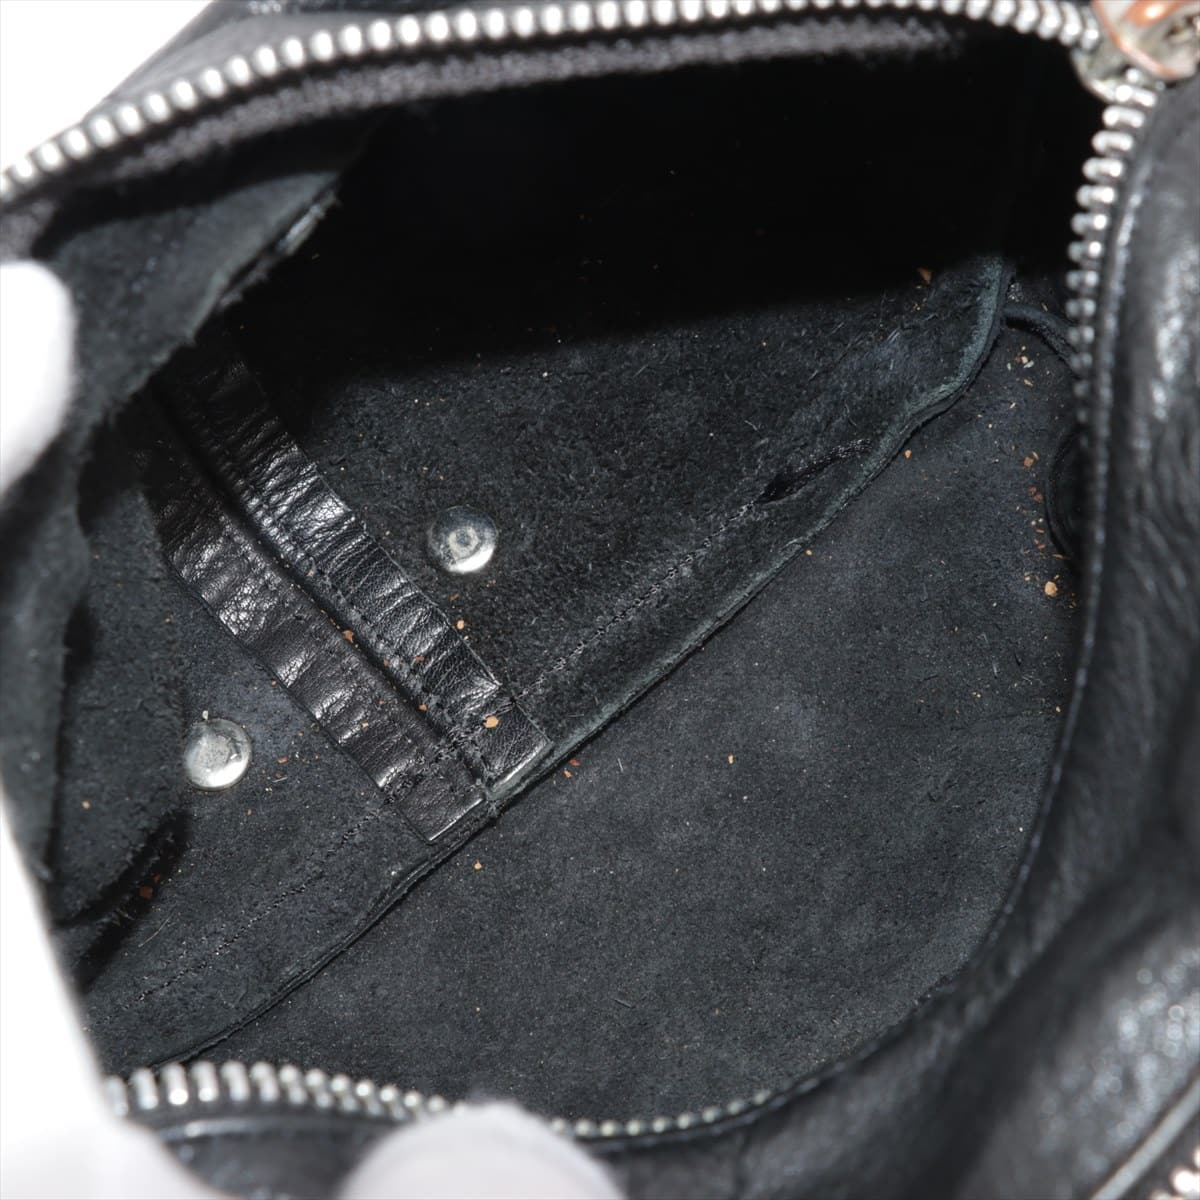 Chrome Hearts Snat Pack Shoulder bag Leather